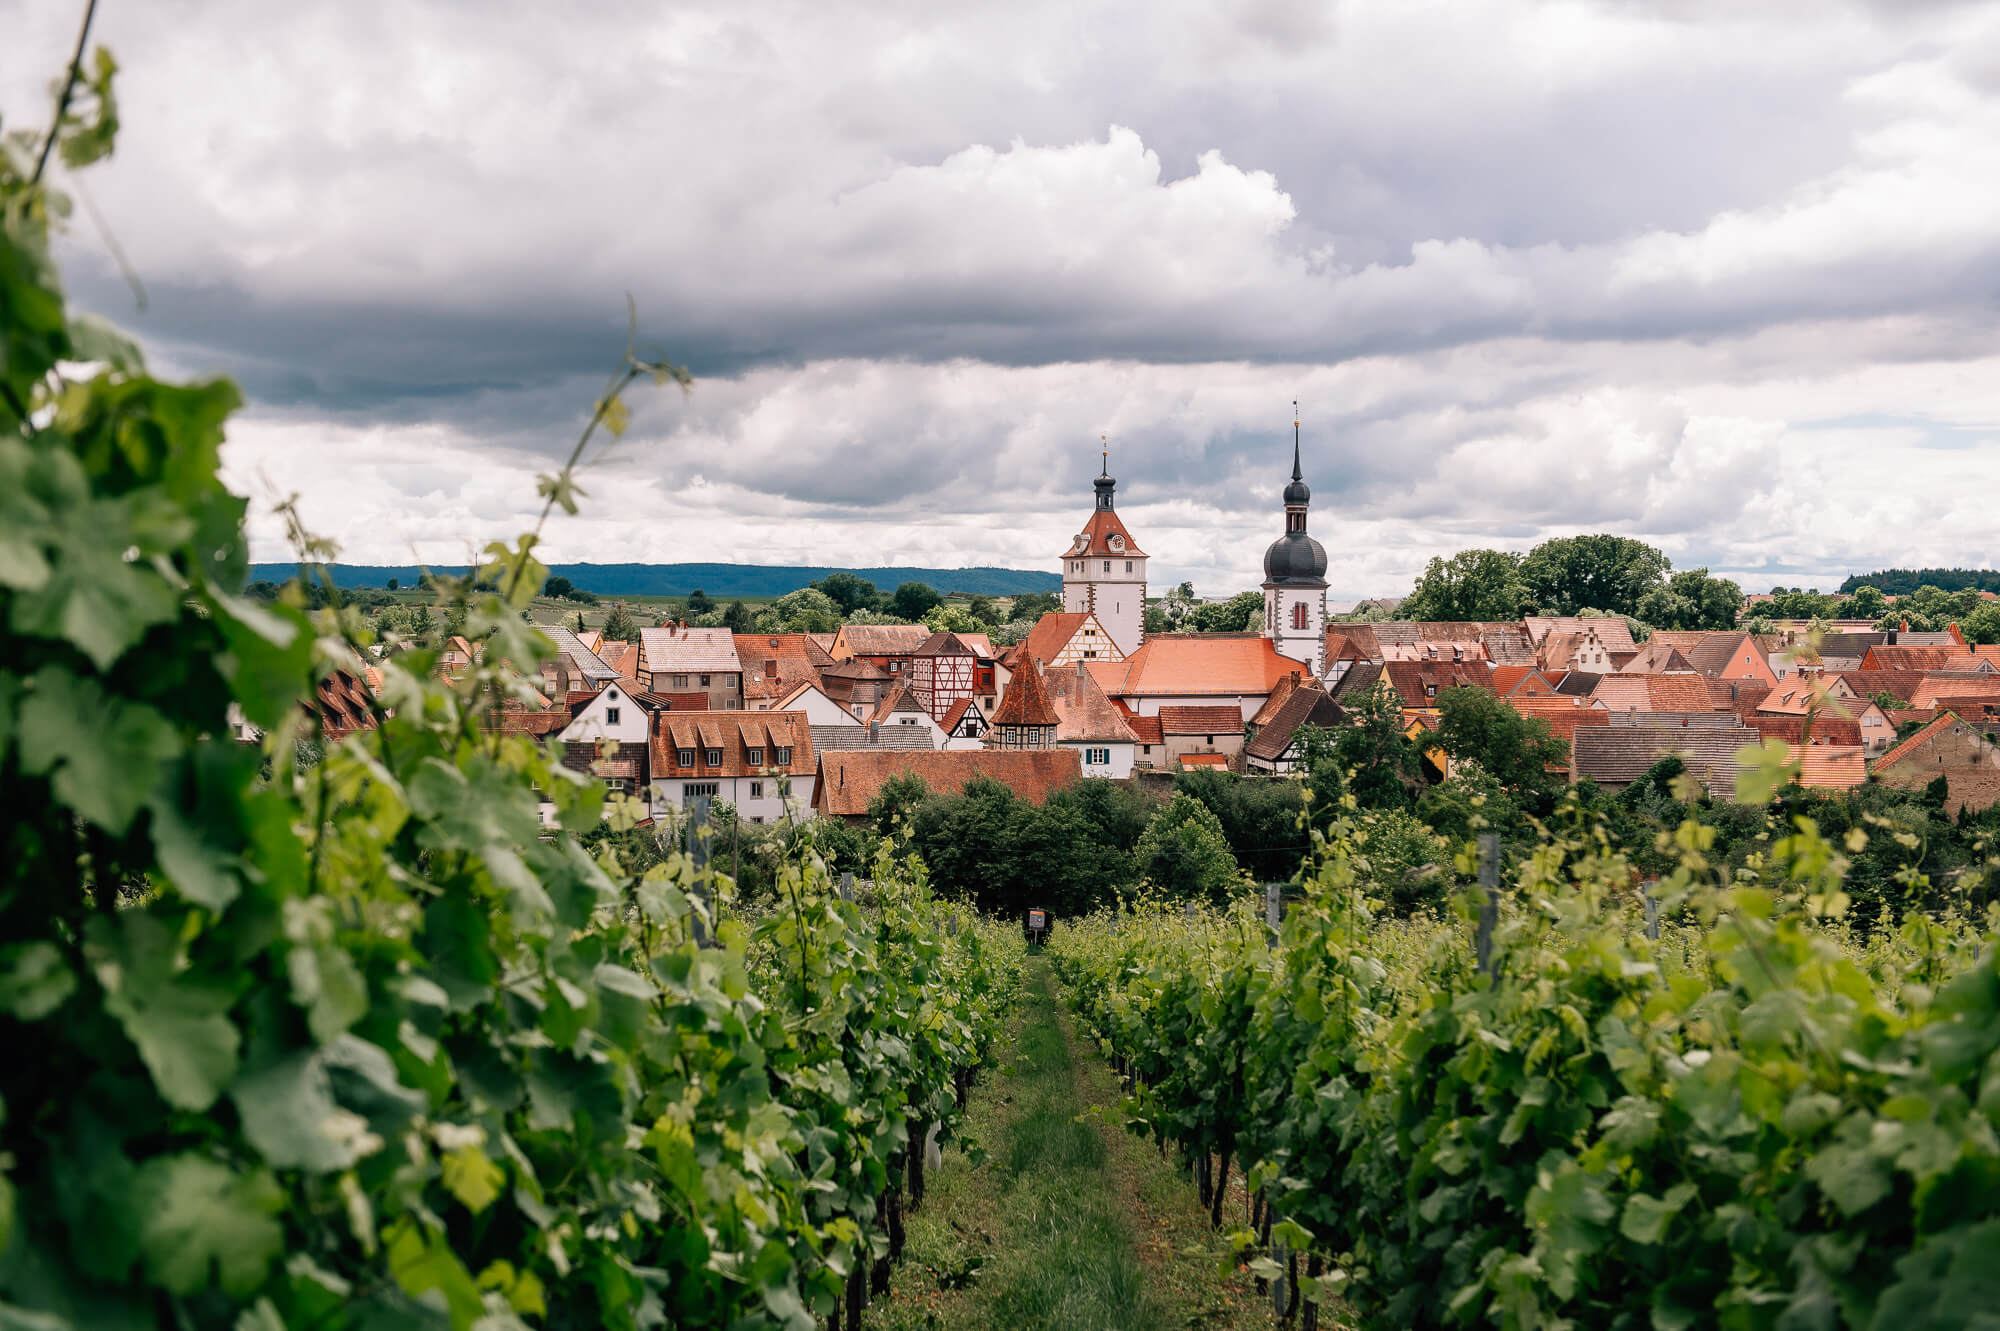 Wald und Wein – unterwegs mit dem Förster auf der Prichsenstadter Traumrunde